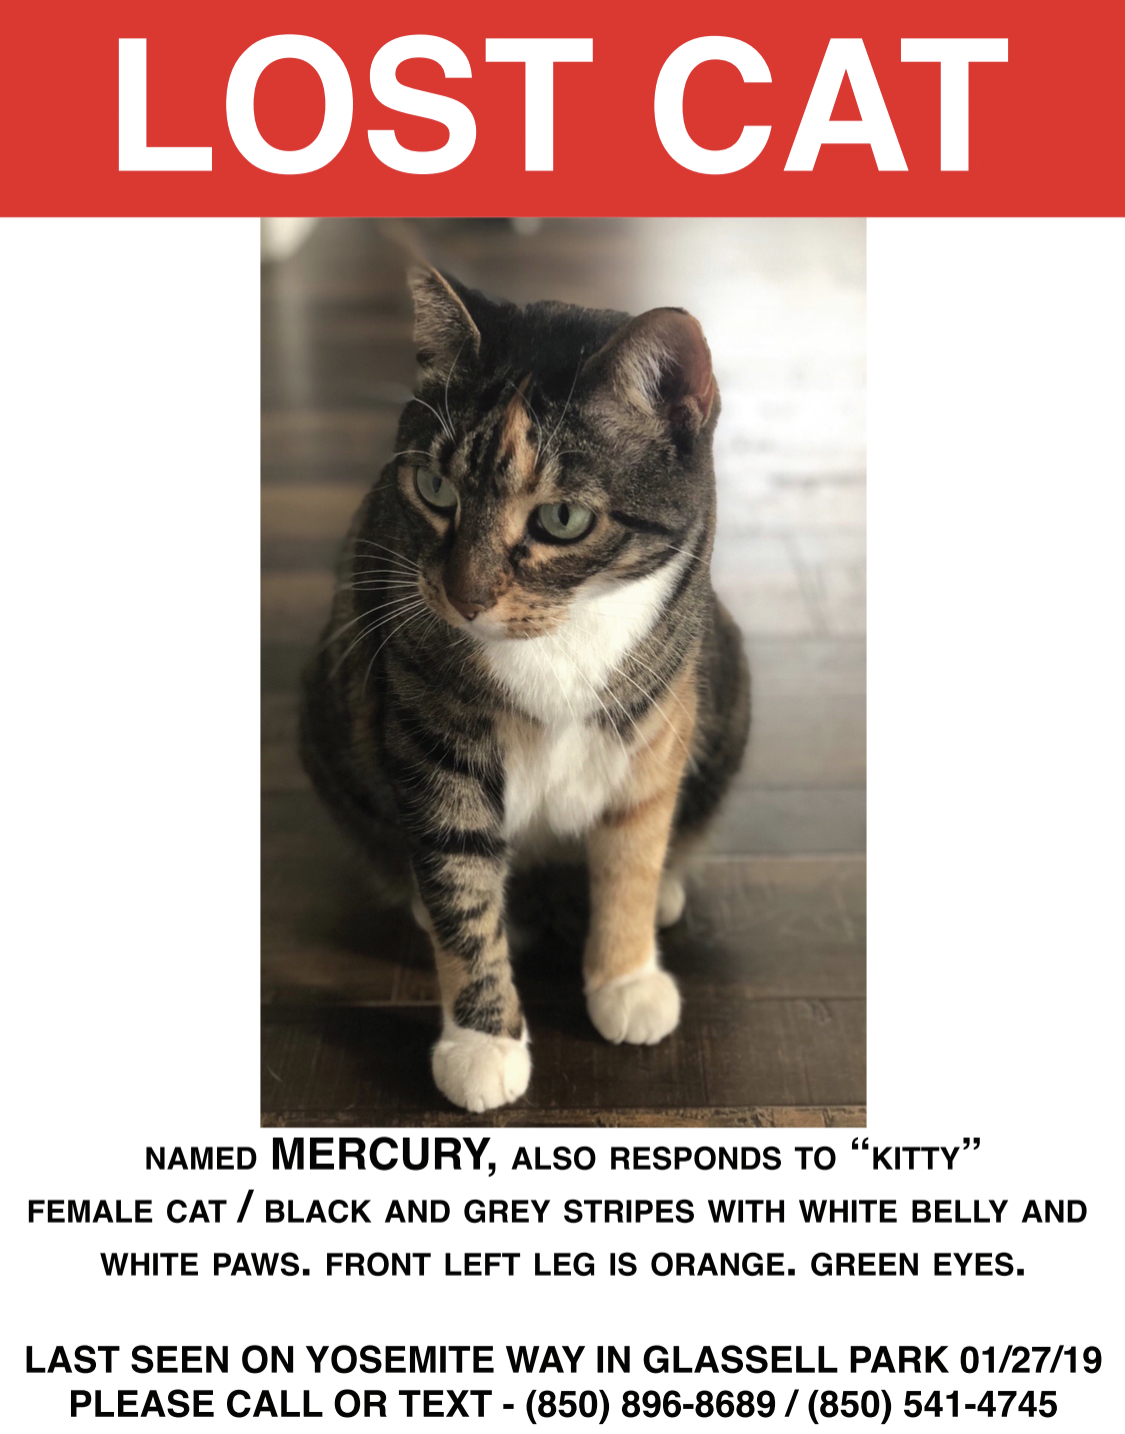 Image of Mercury, Lost Cat